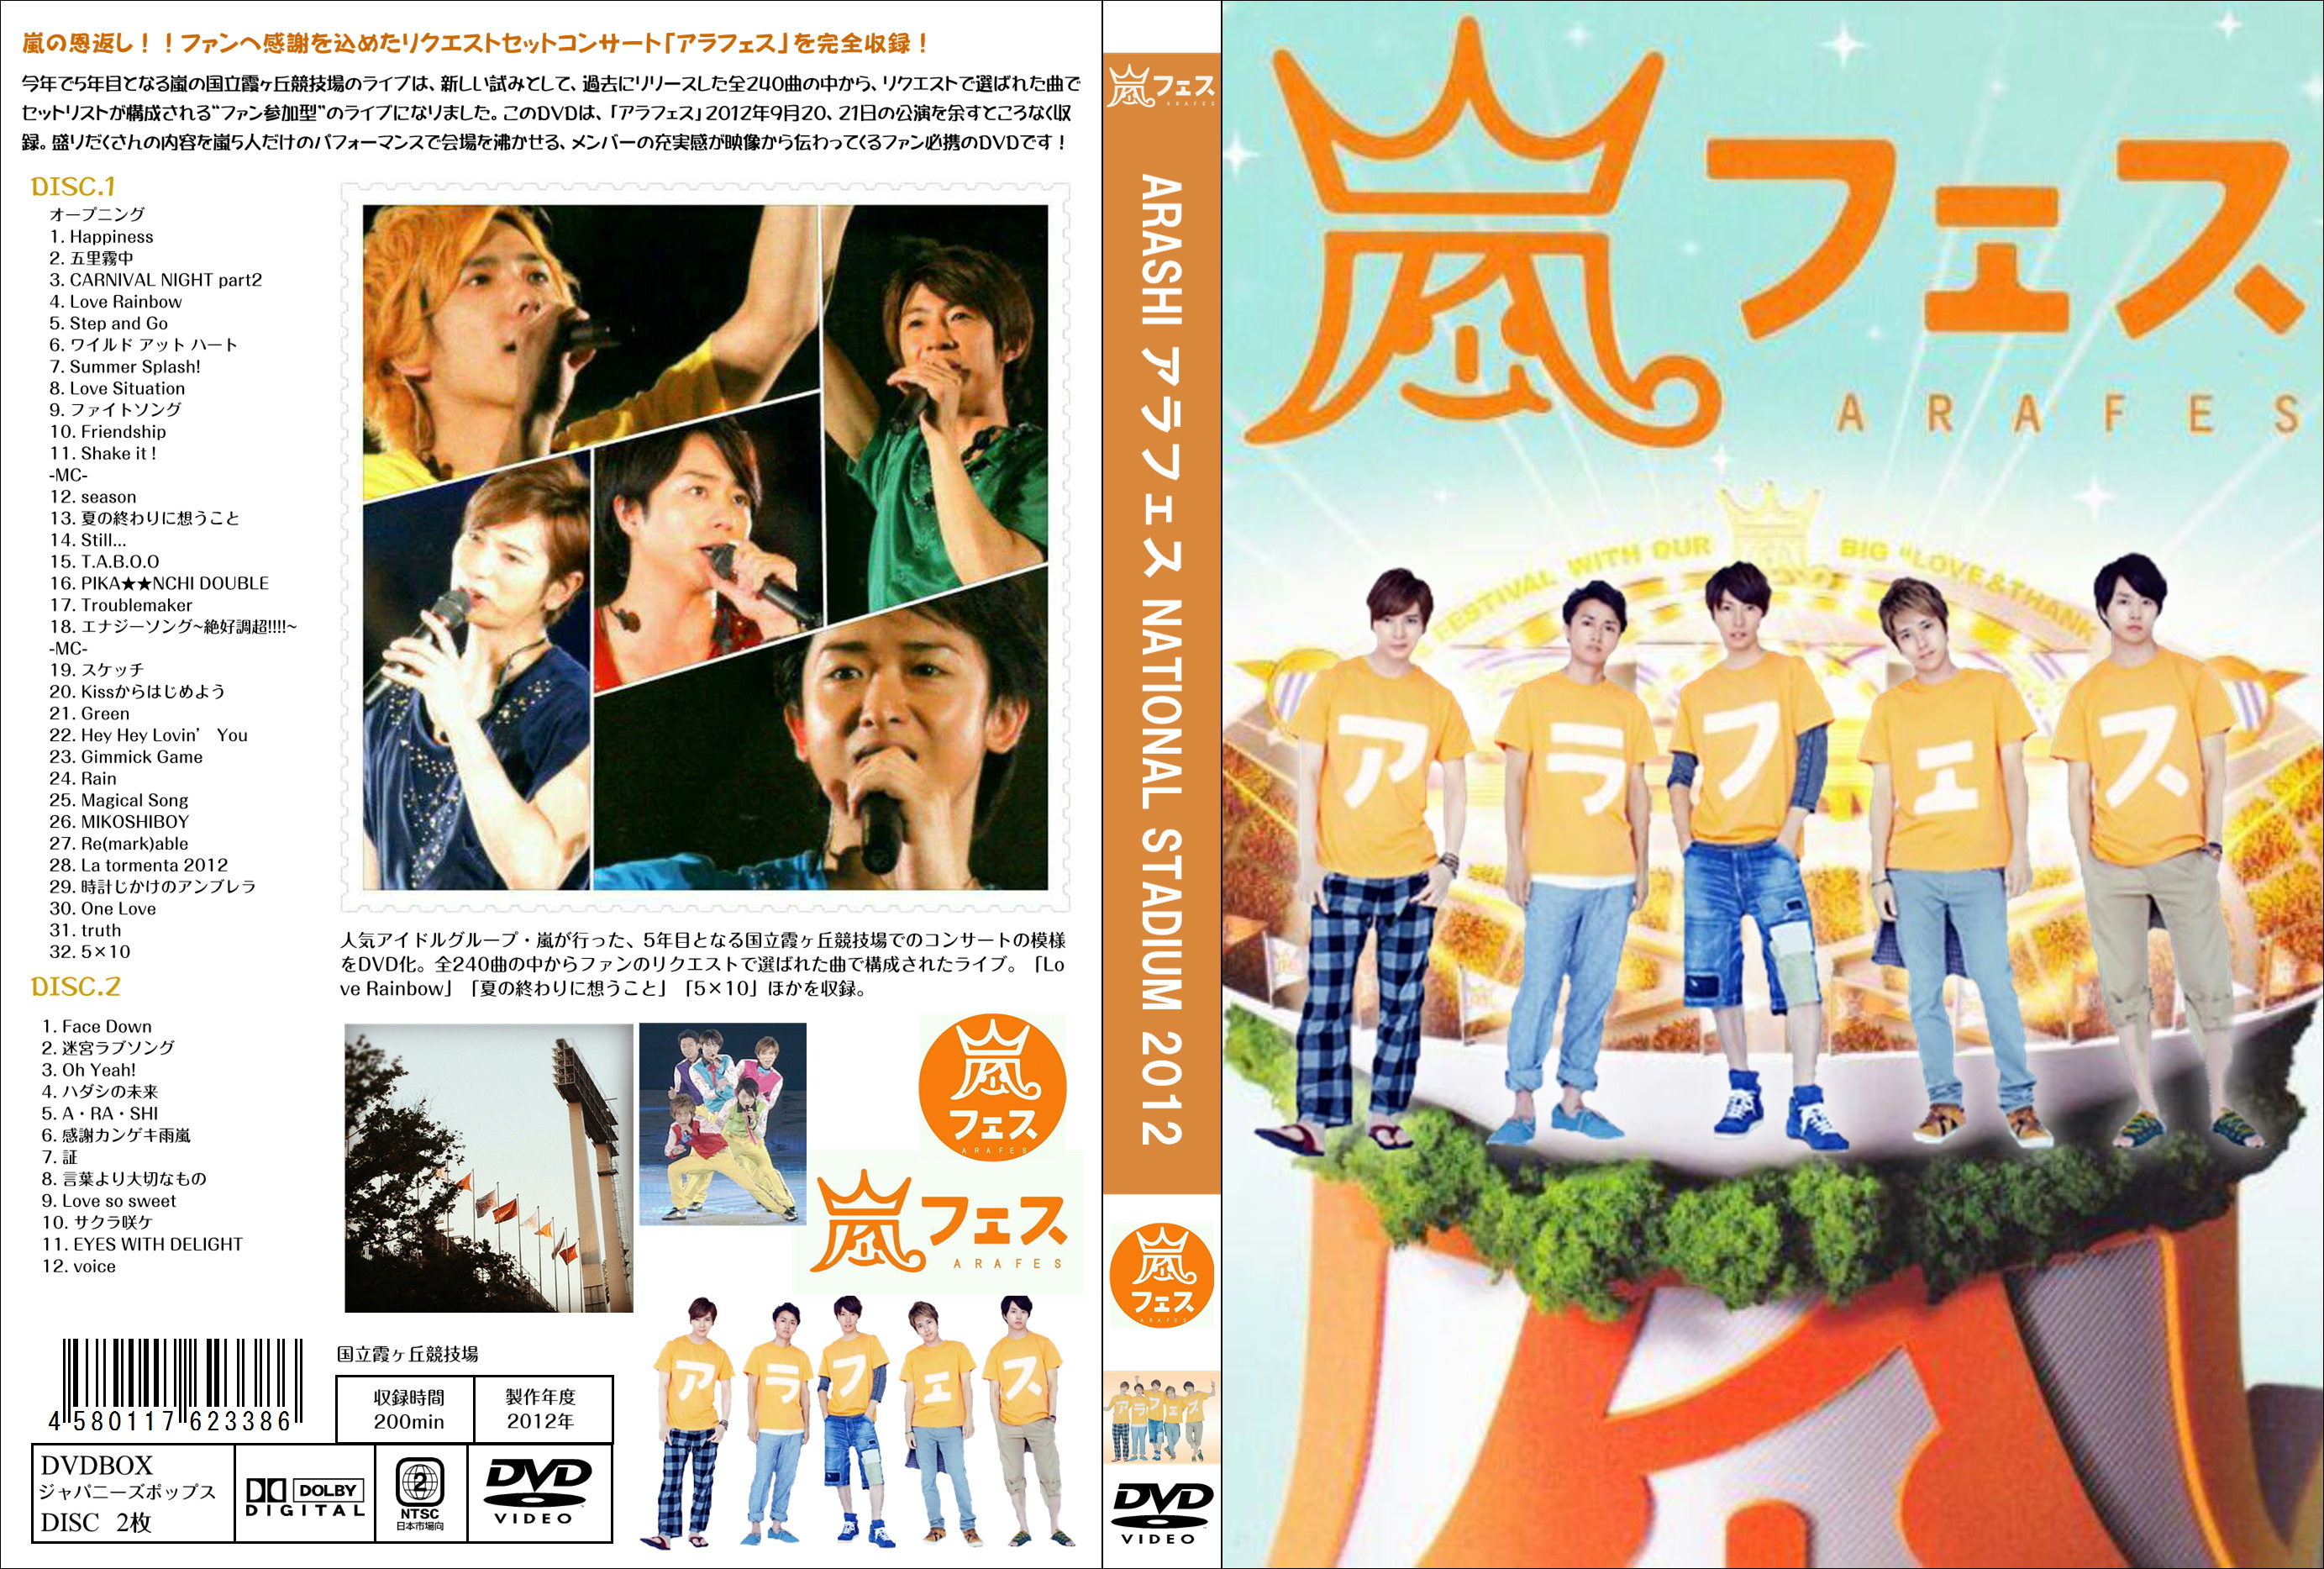 ARASHI アラフェス(初回プレス仕様) DVD :20230520194226-02099:EN